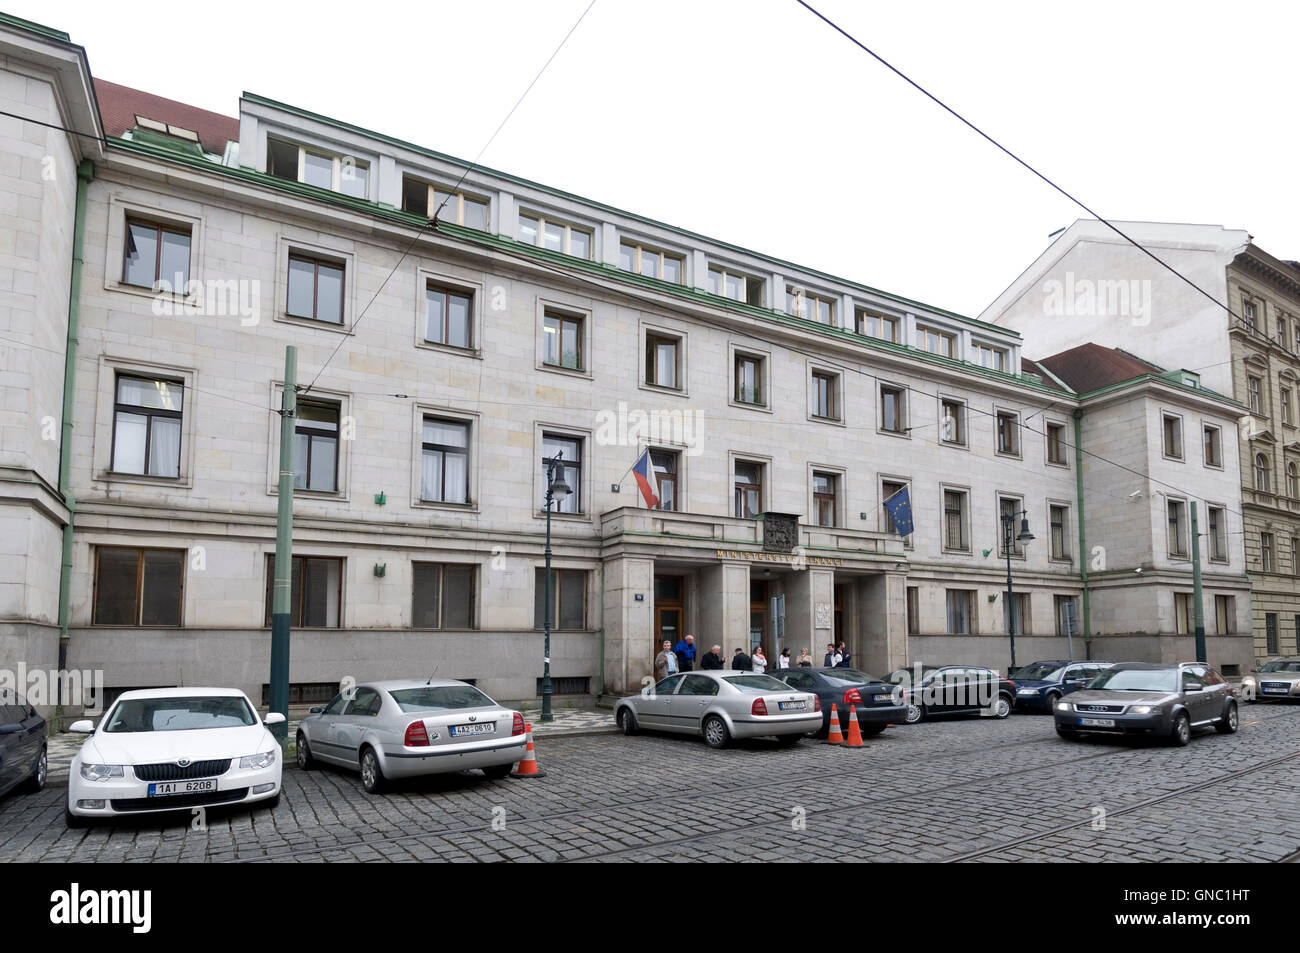 Séc: Kiểm toán chỉ ra những hạn chế tại Bộ Tài chính